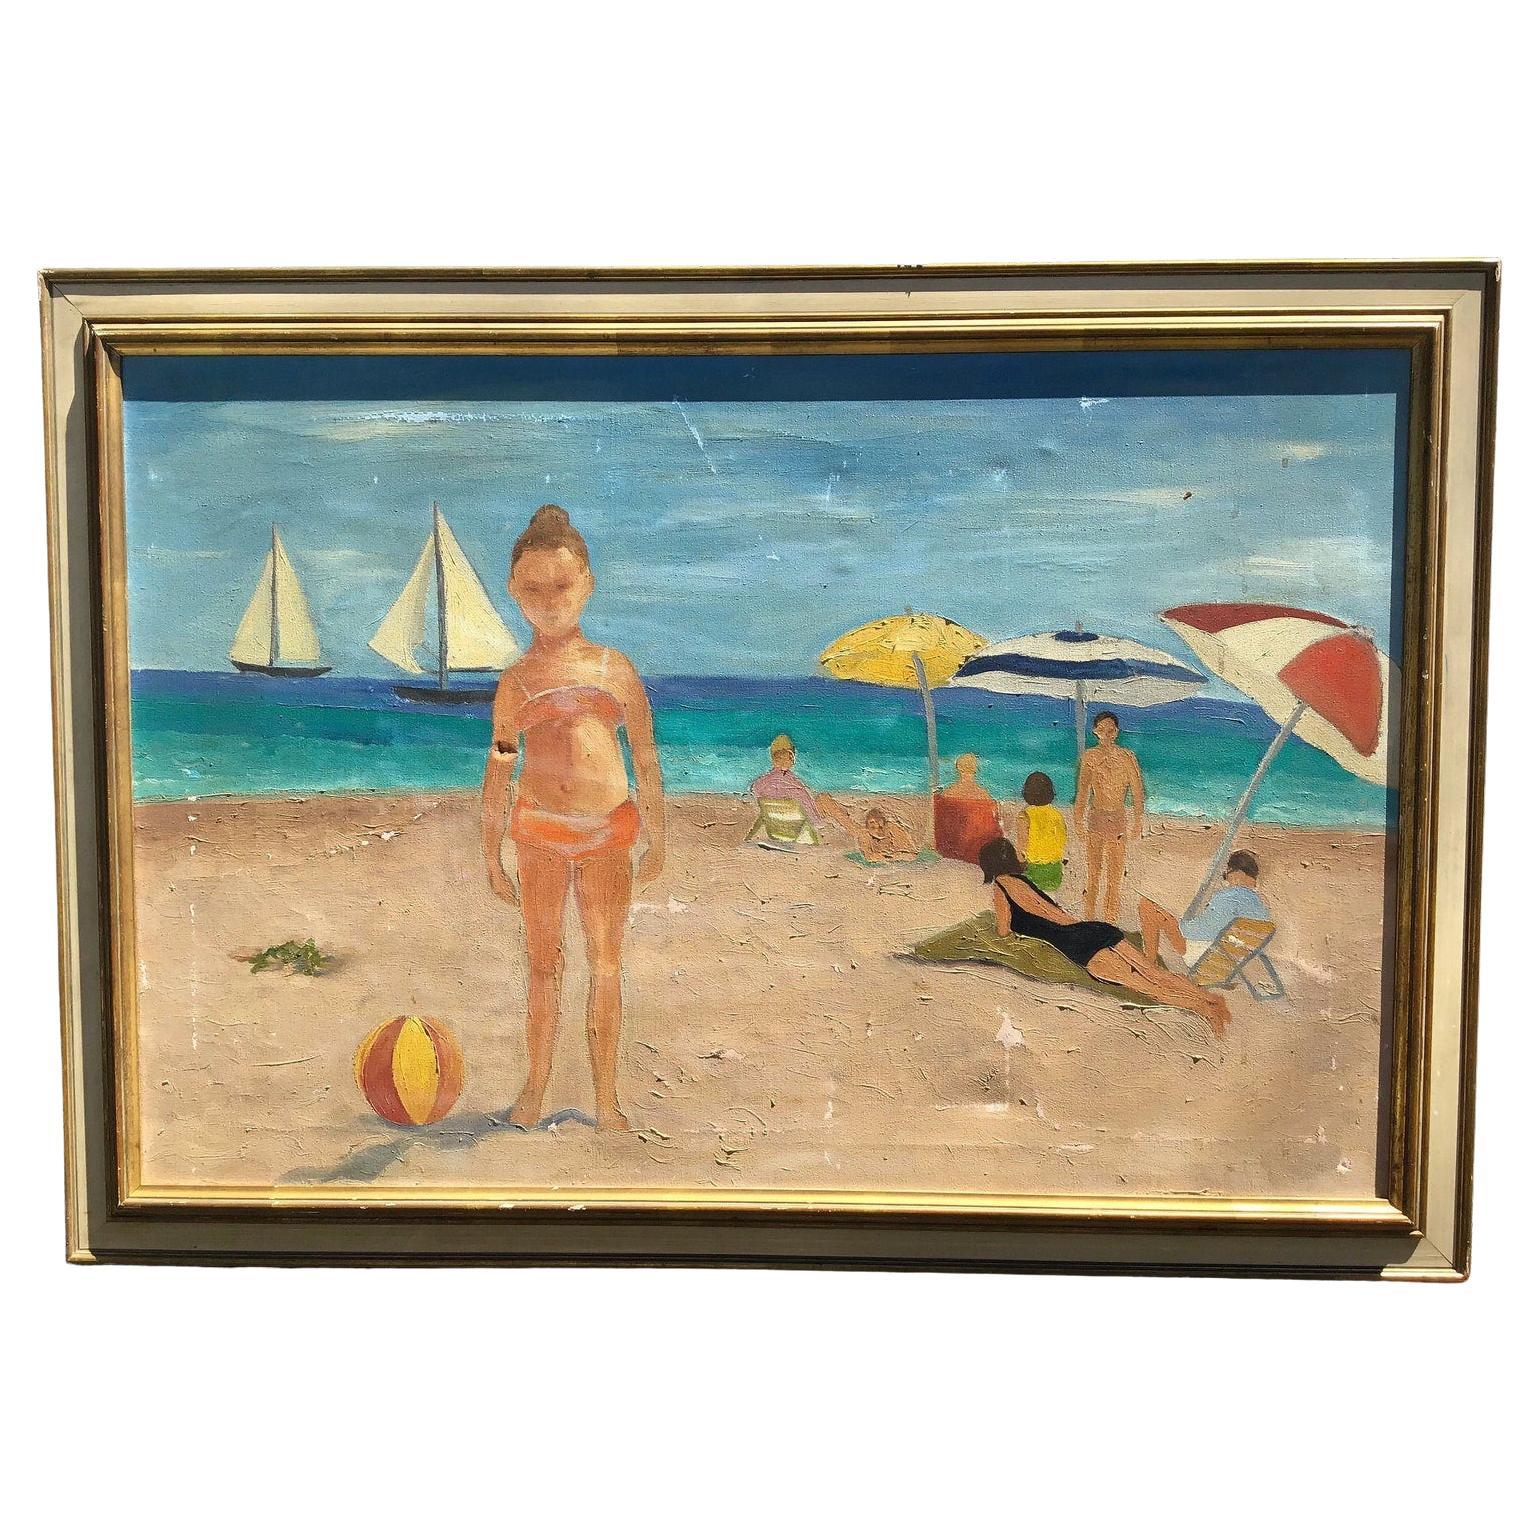 Mid century beach scene painting, colorful seaside painting, est une peinture à l'huile vintage en détresse d'une scène d'océan avec des baigneurs.
Cette œuvre n'est pas signée, bien qu'elle fasse partie d'un groupe de cinq œuvres, toutes réalisées